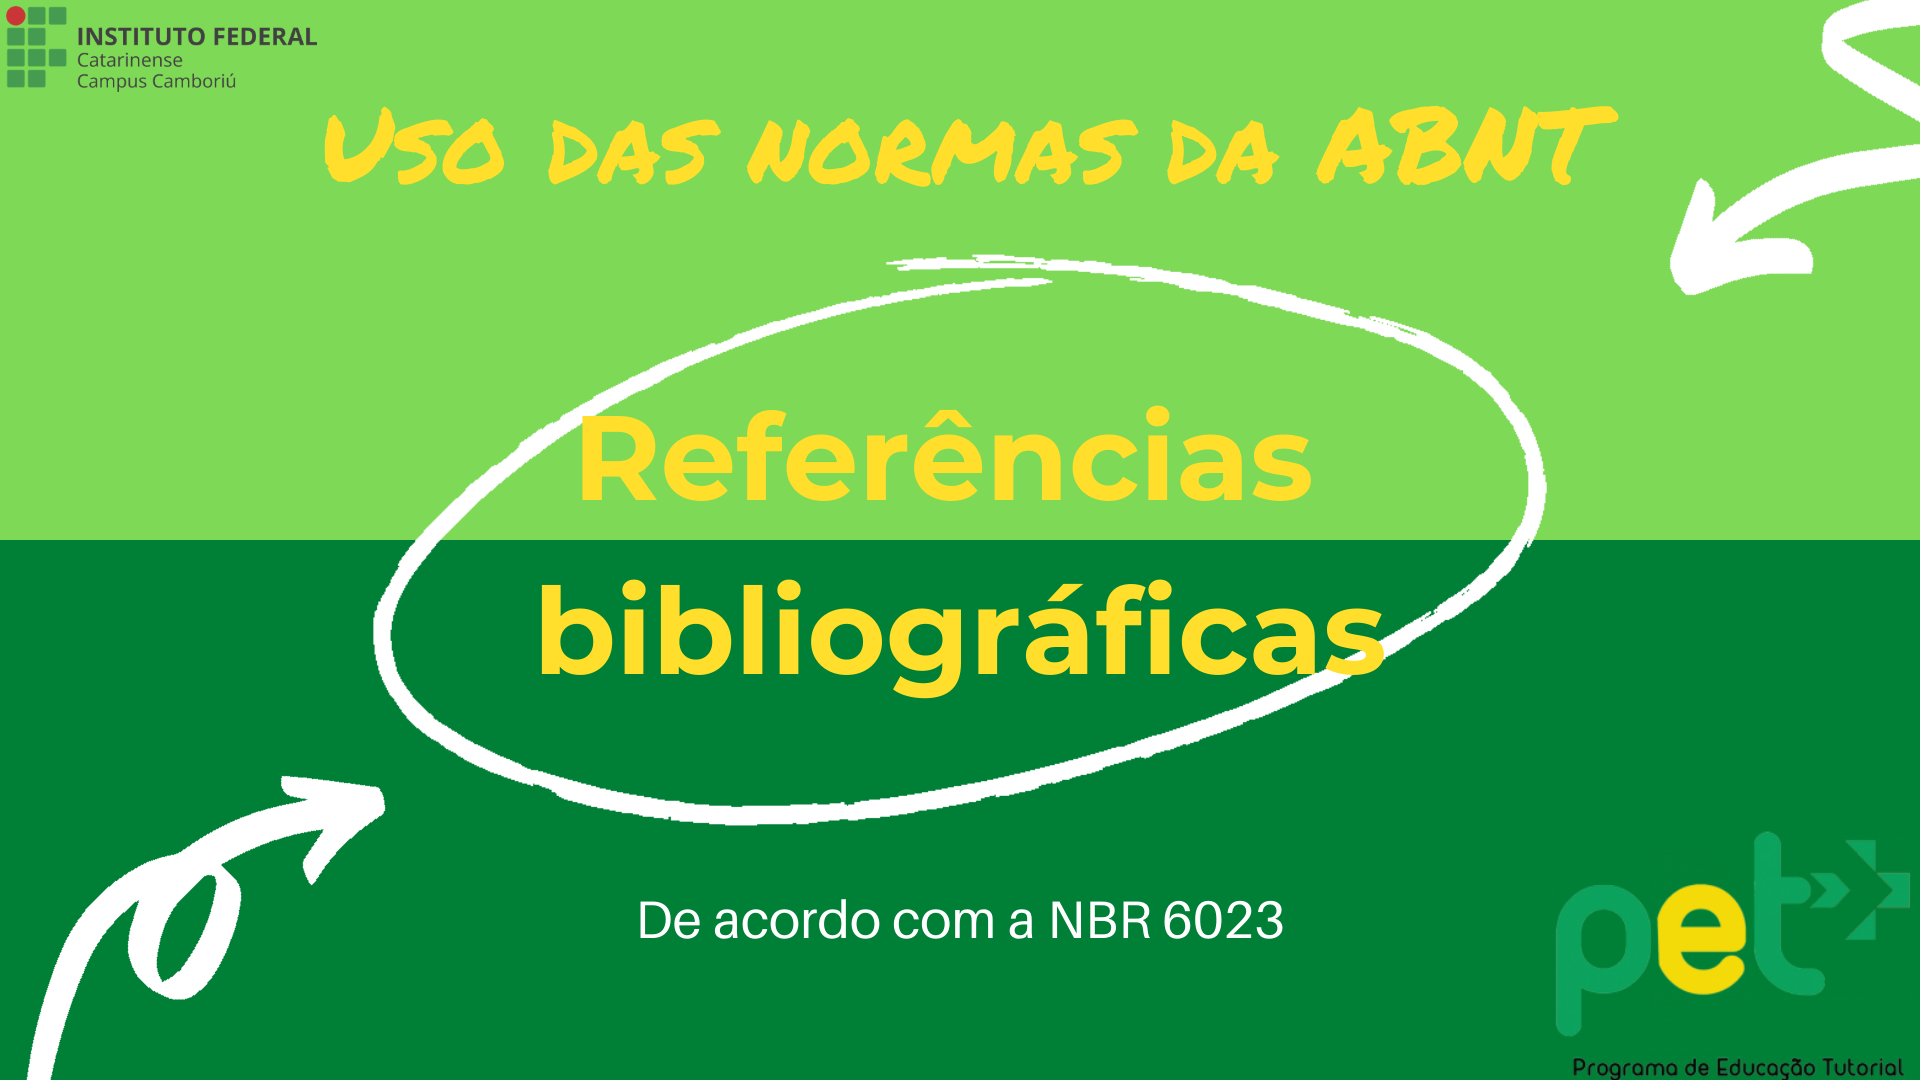 Dicas de uso das normas da ABNT sobre referências bibliográficas.